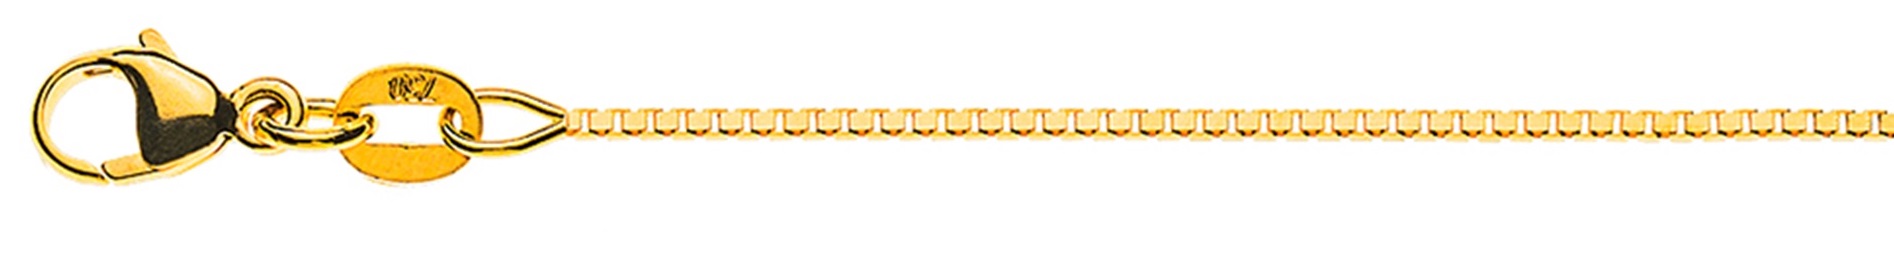 AURONOS Élégance Necklace yellow gold 14K Venetian chain diamond 42cm 0.9mm